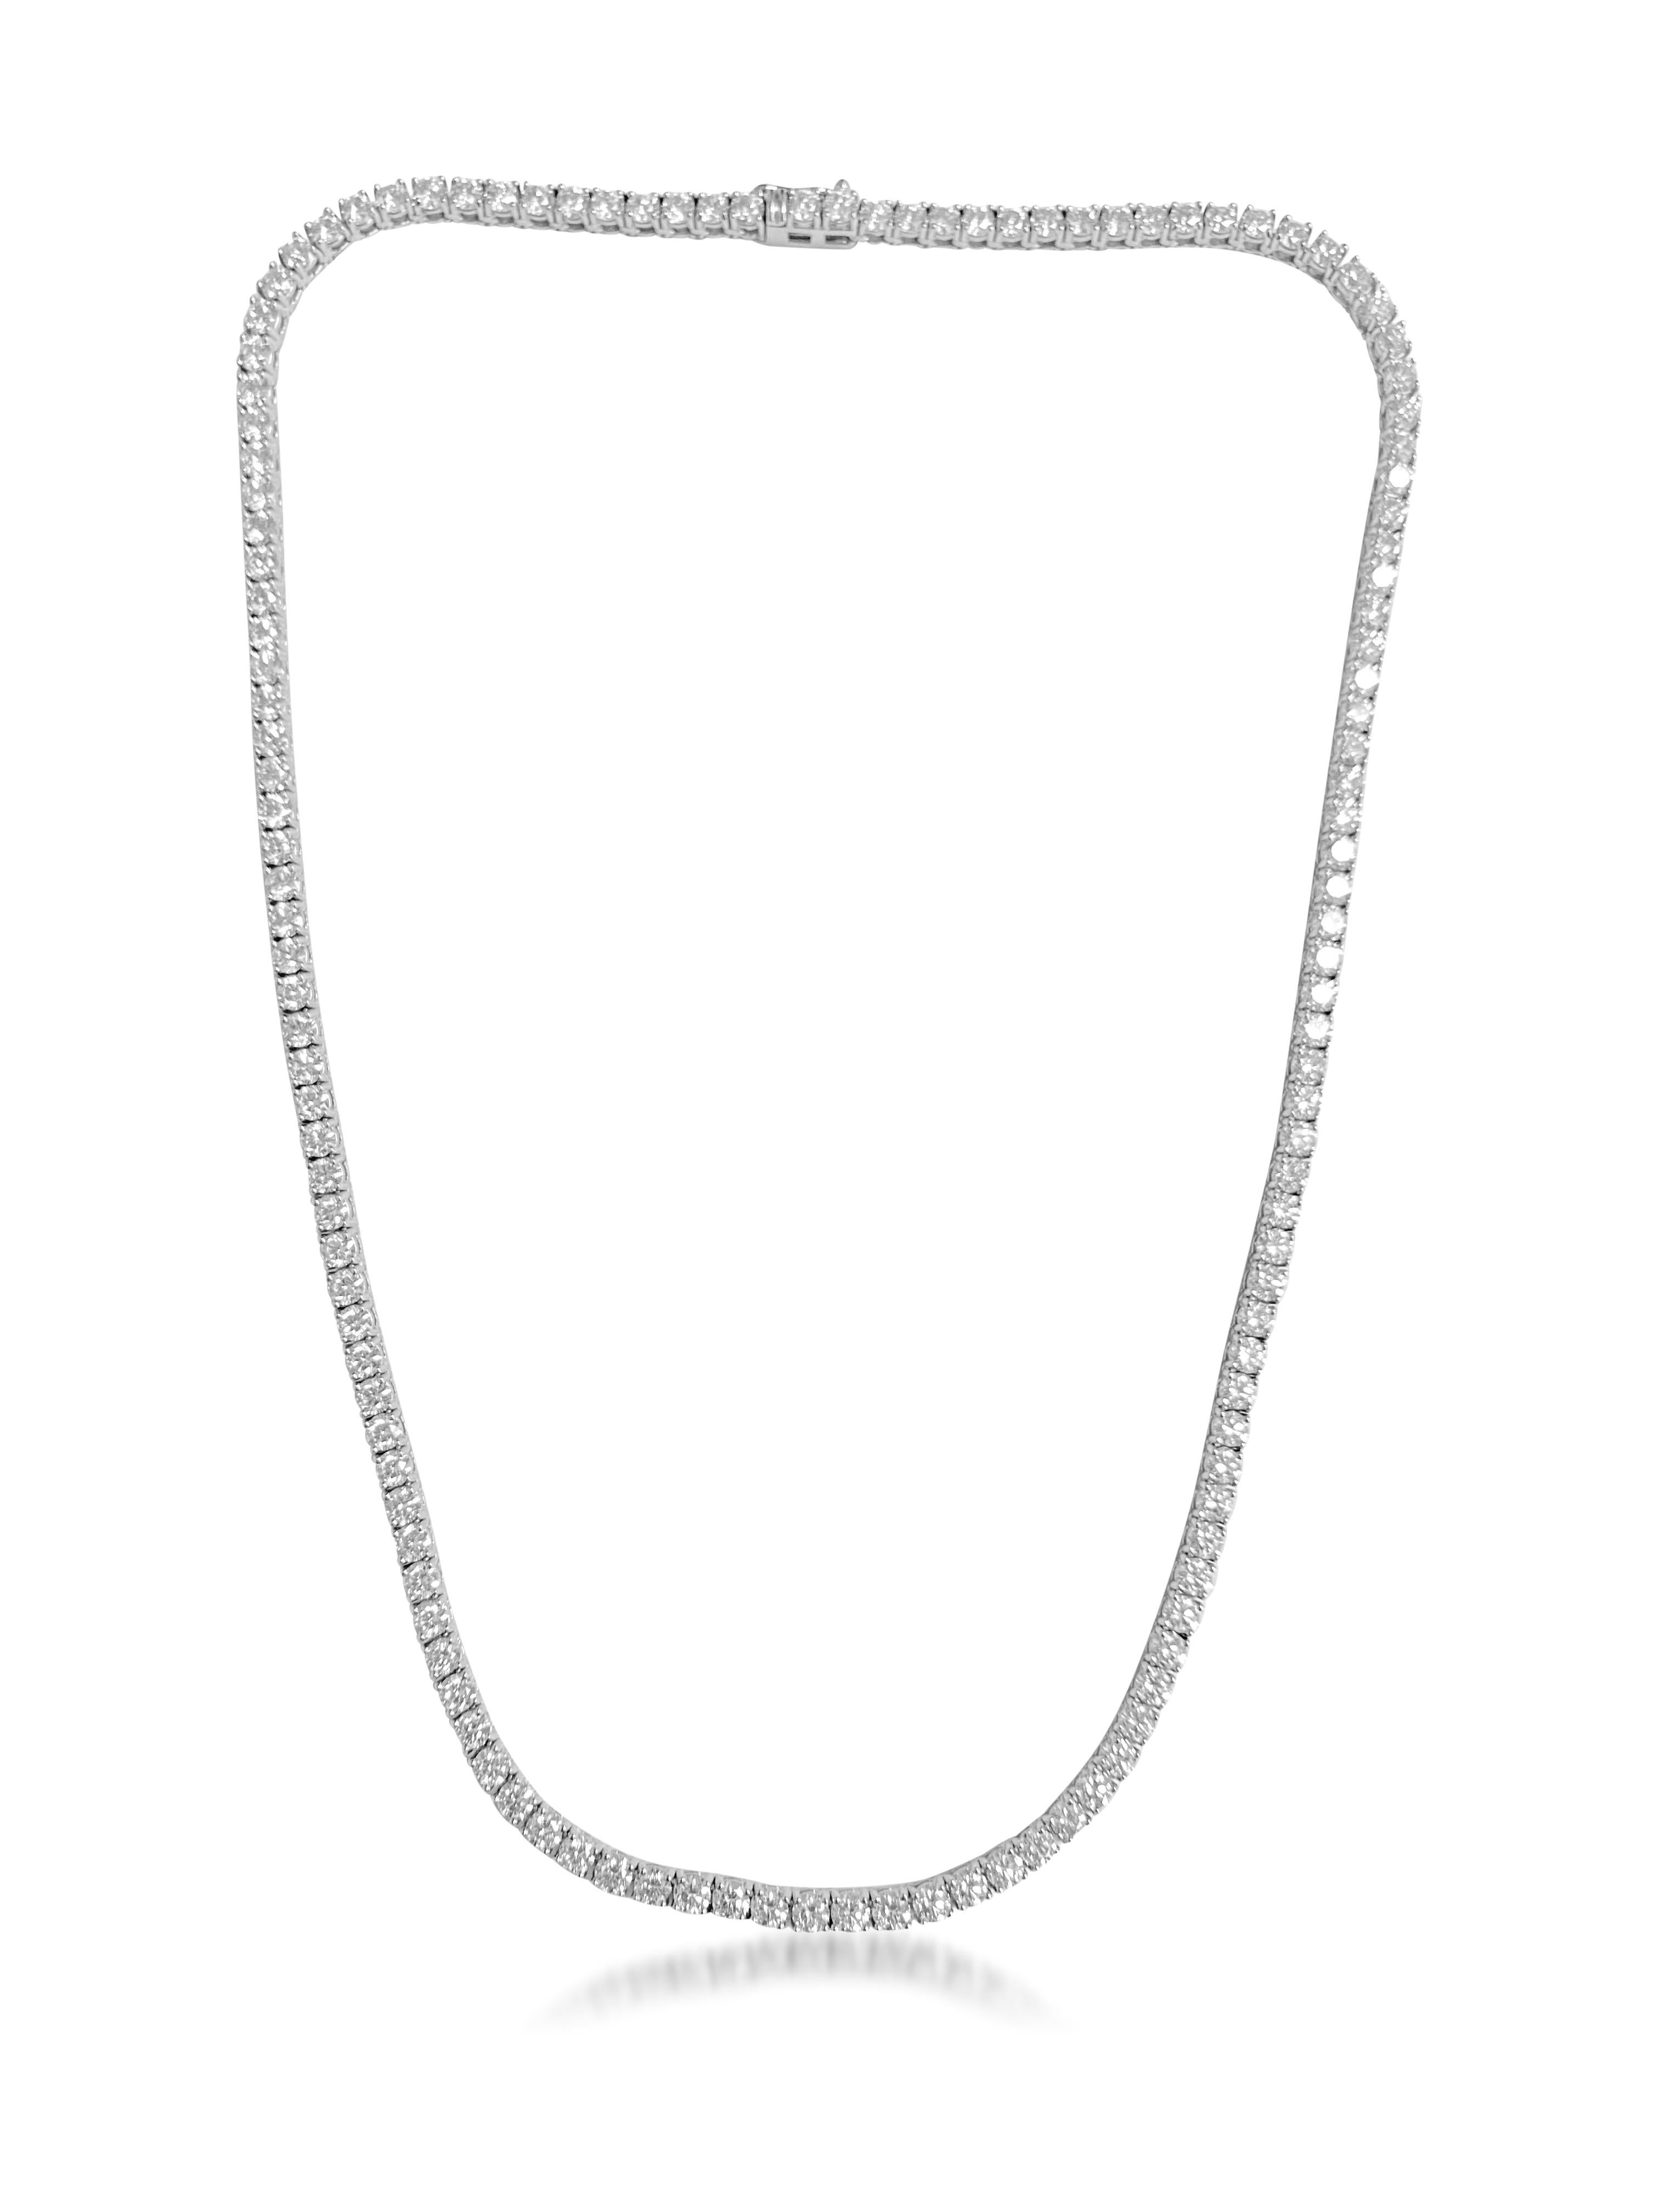 14.6ct VVS Diamond Tennis Necklace For Sale 1